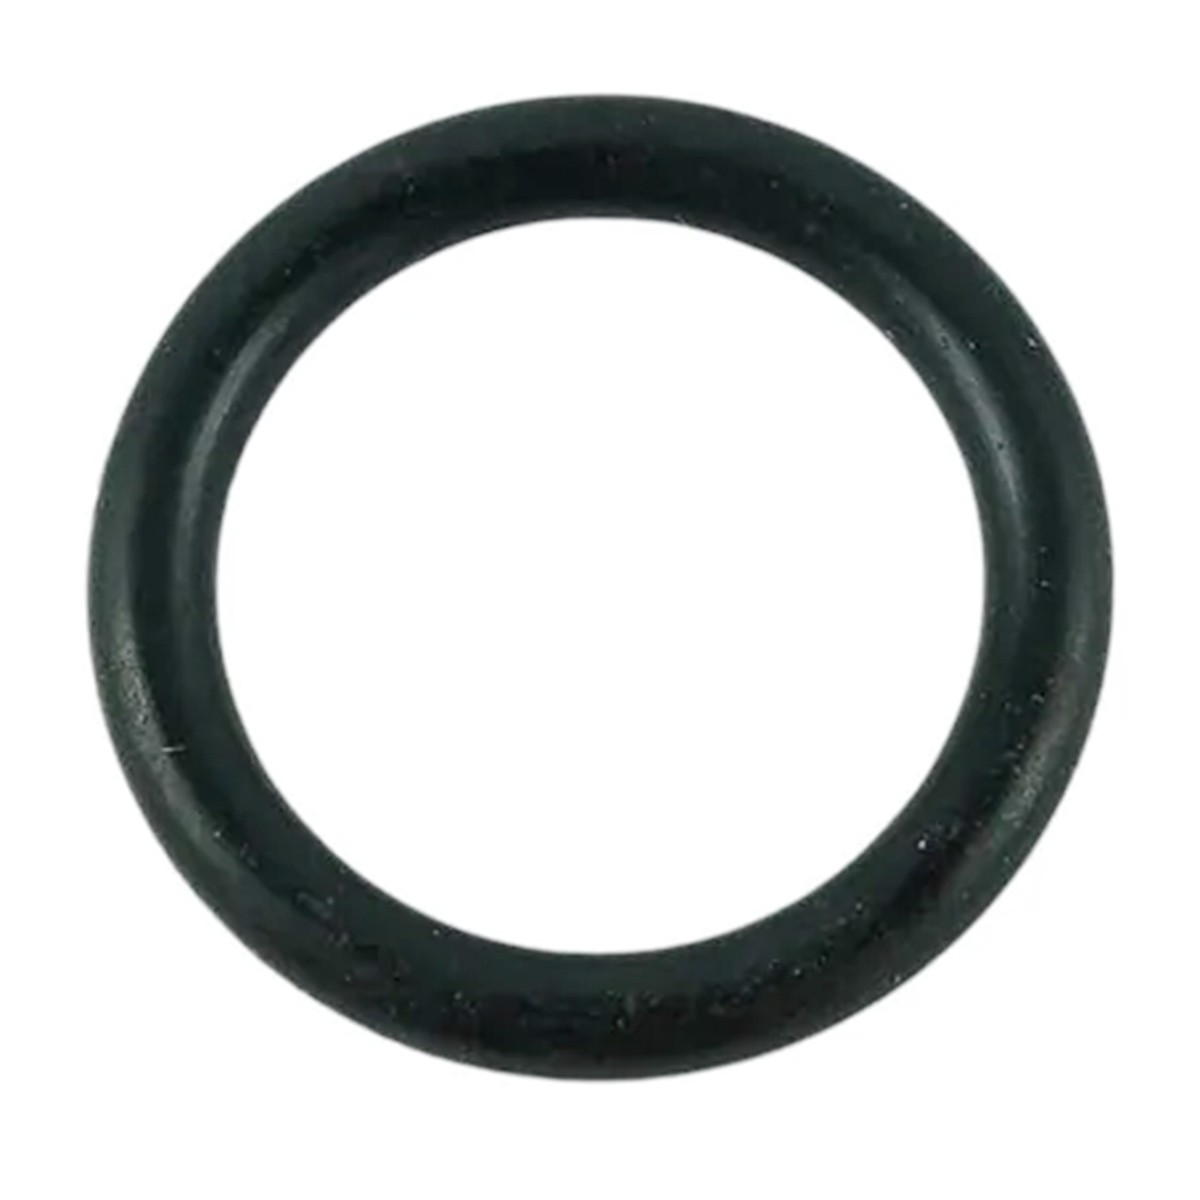 O-ring 13.80 x 2.40 mm / LS MT3.35 / LS MT3.40 / LS MT3.50 / LS MT3.60 / S801014010 / 40029201